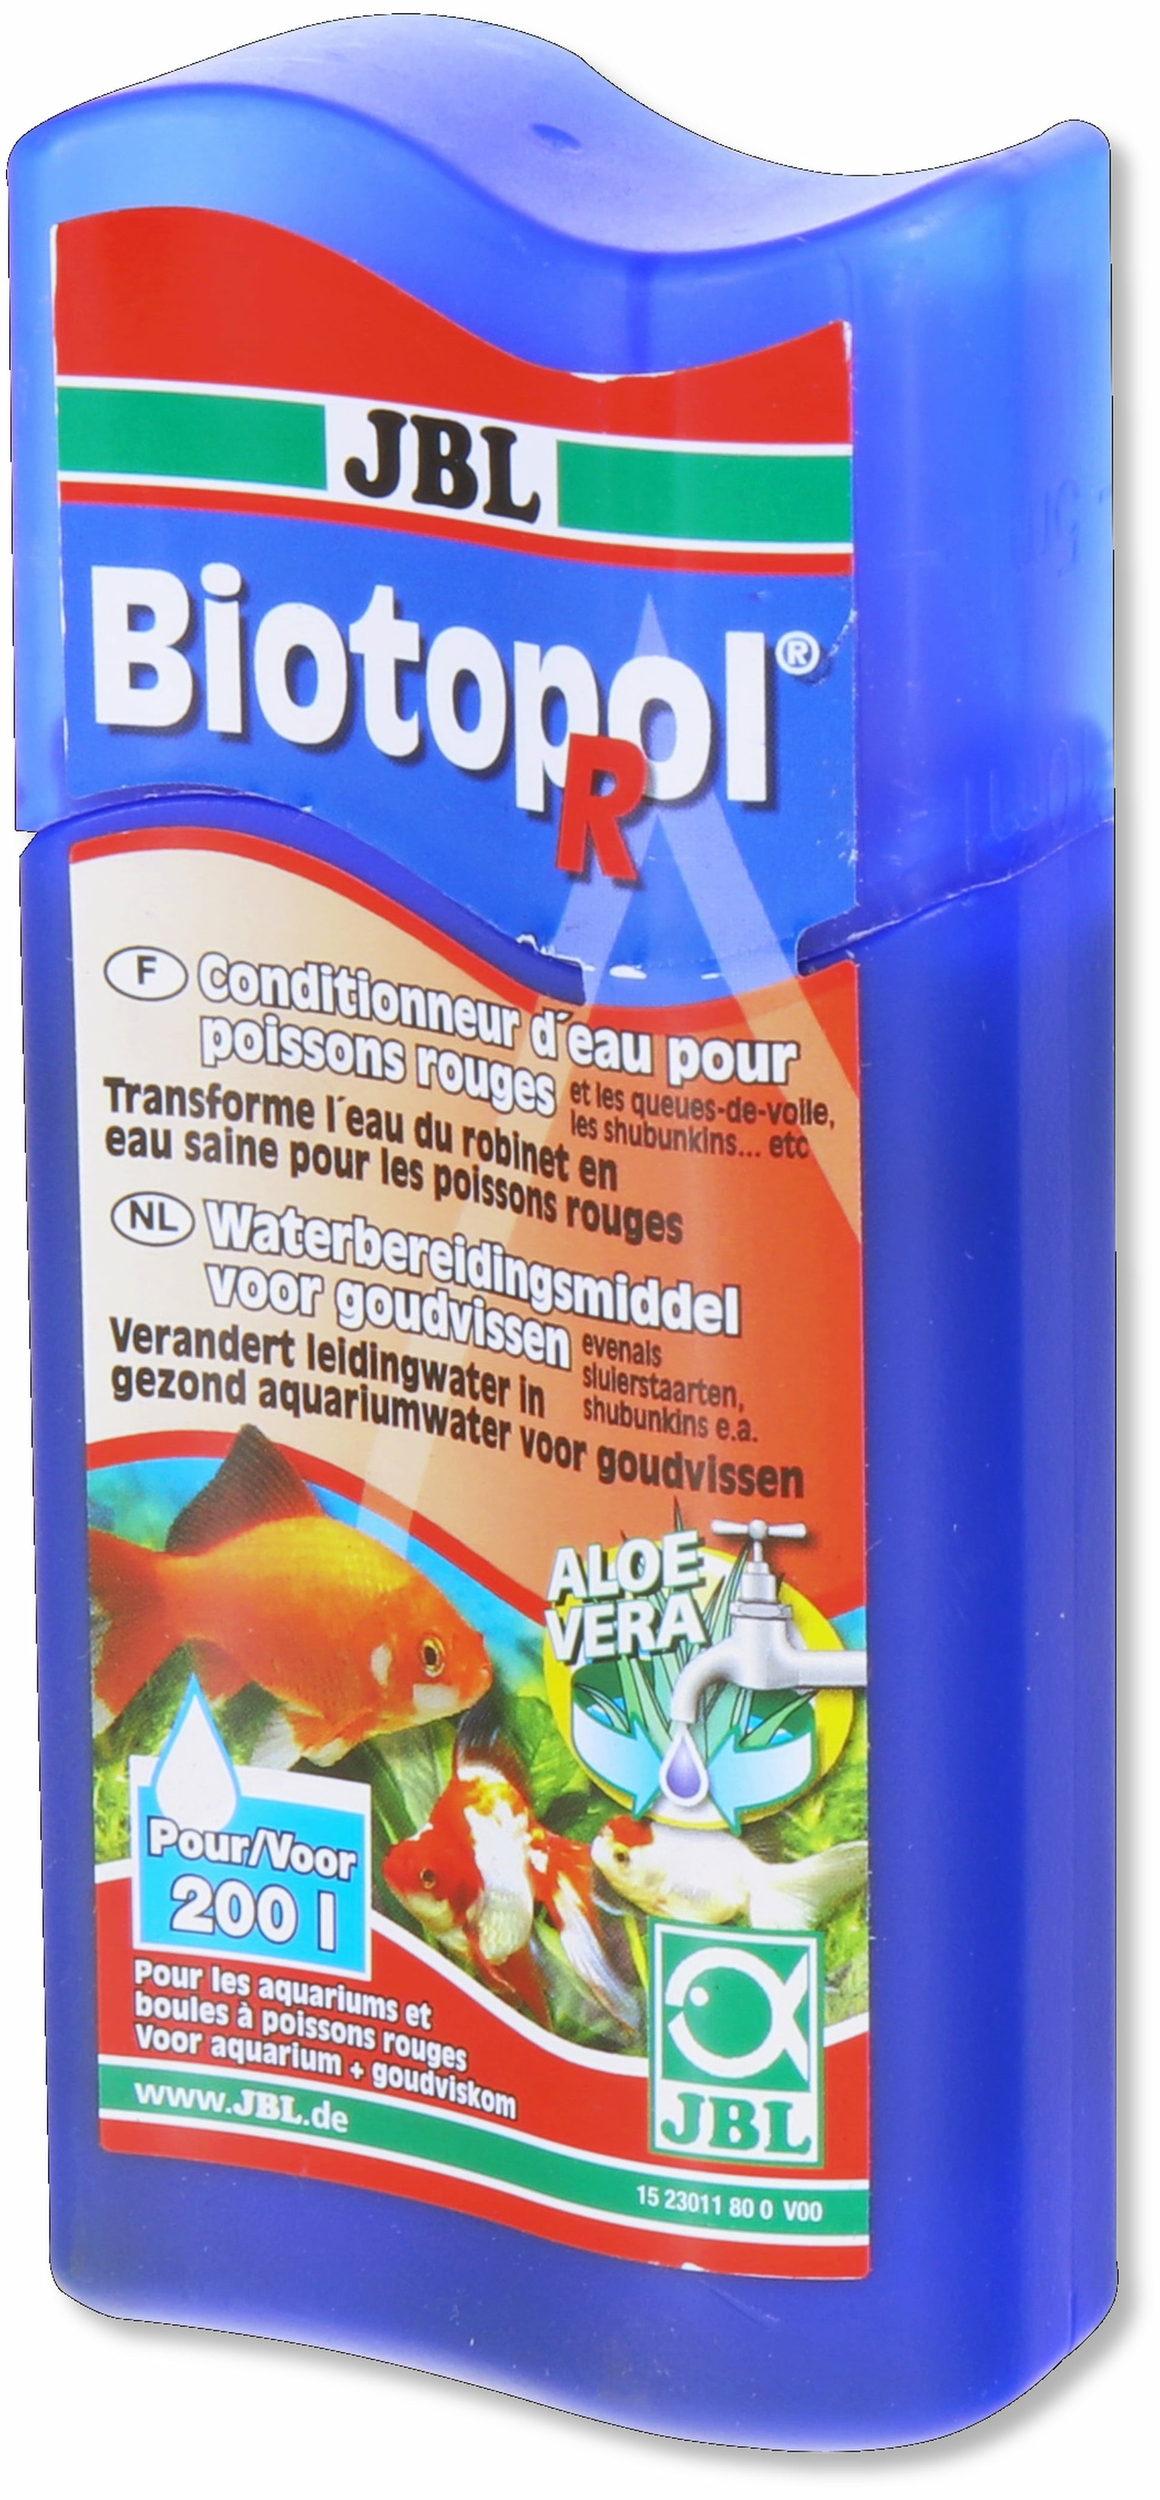 JBL Biotopol R 100 ml conditionneur d\'eau du robinet pour poissons rouges